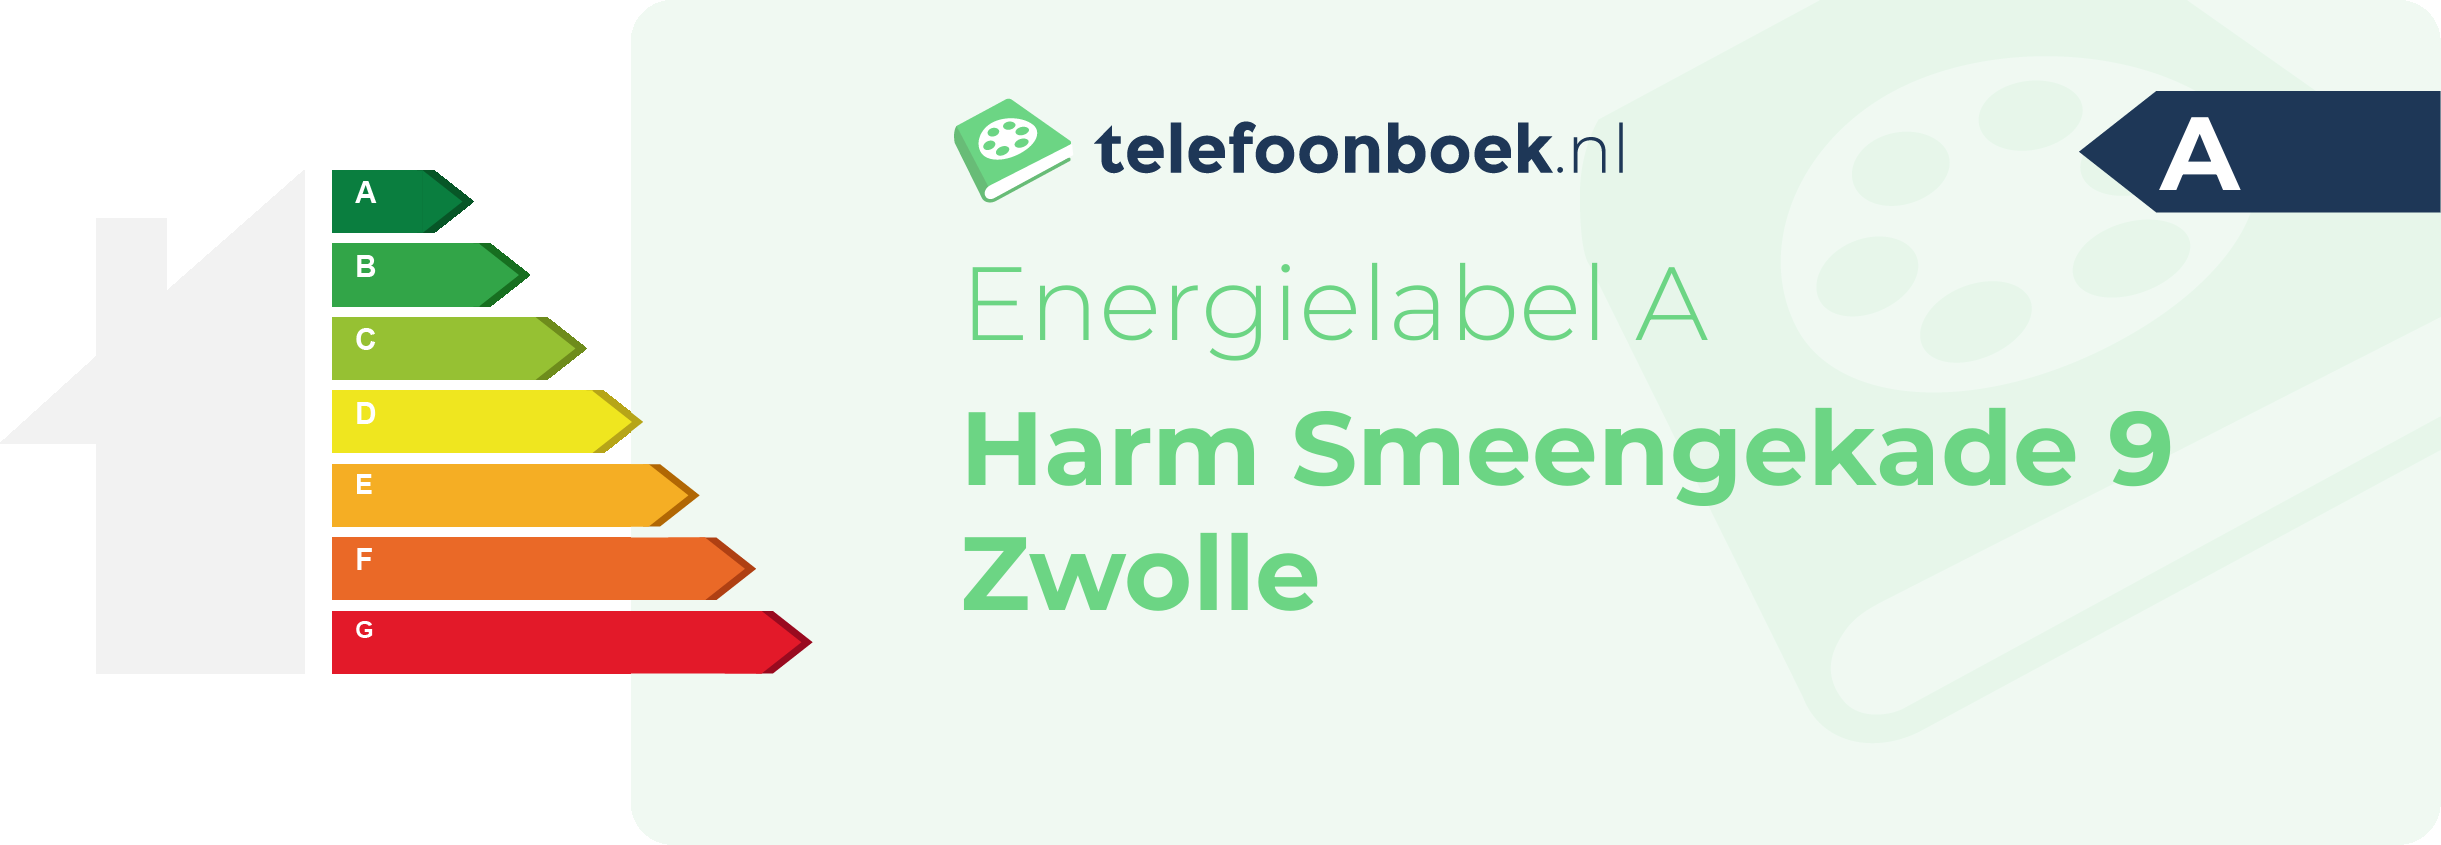 Energielabel Harm Smeengekade 9 Zwolle